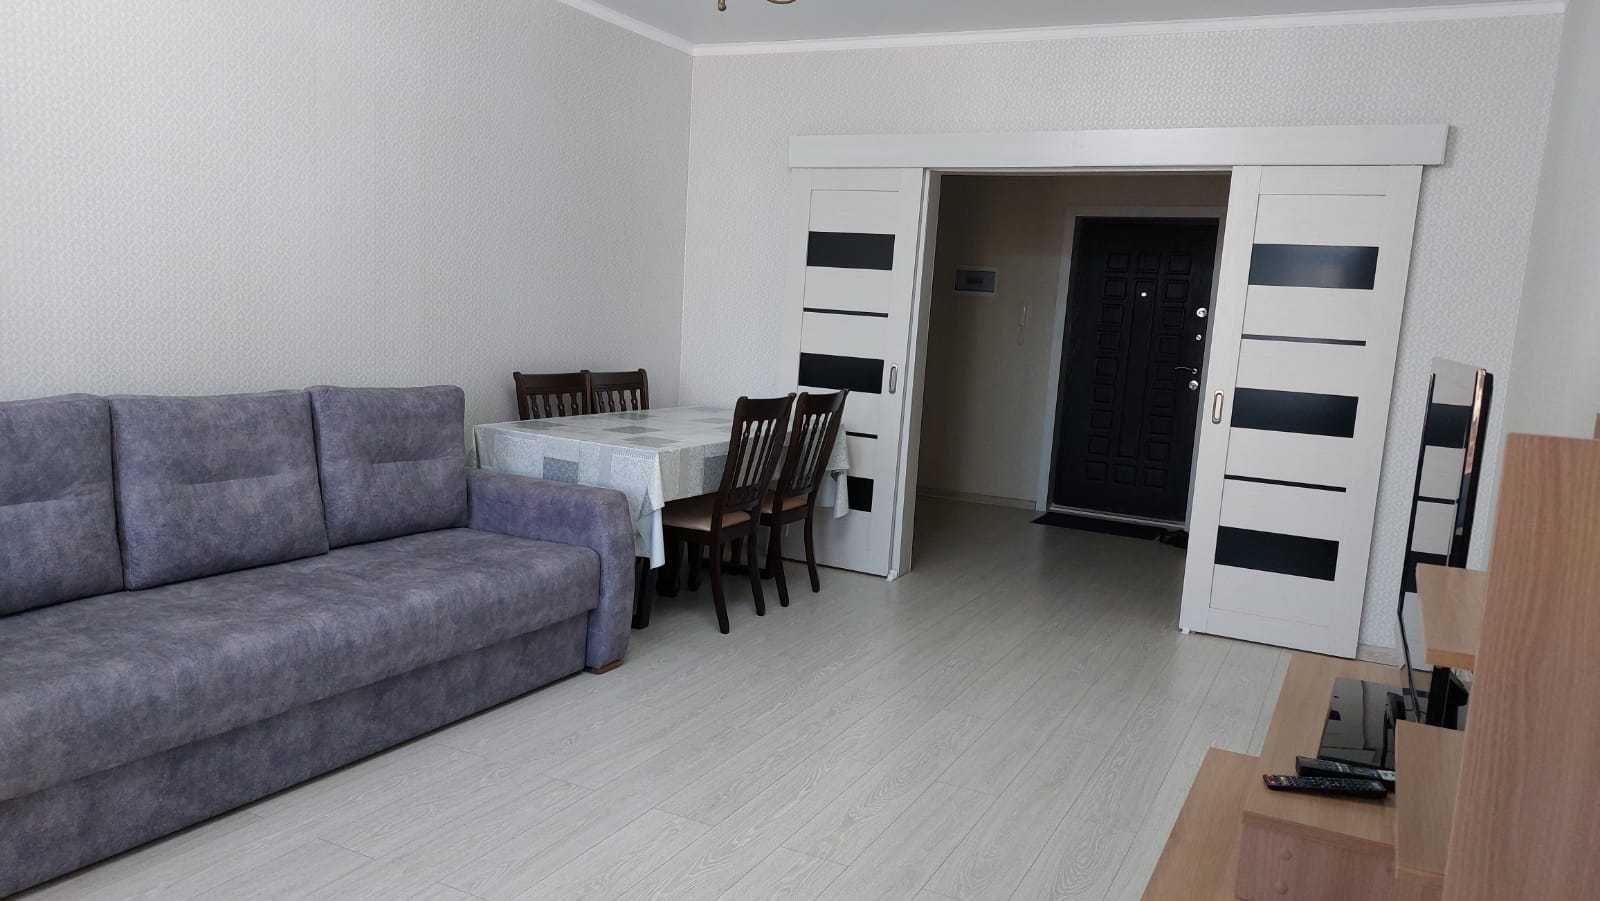 Сдадим 2-комнатную квартиру в Астане в районе Хан-Шатыра: 77 м²